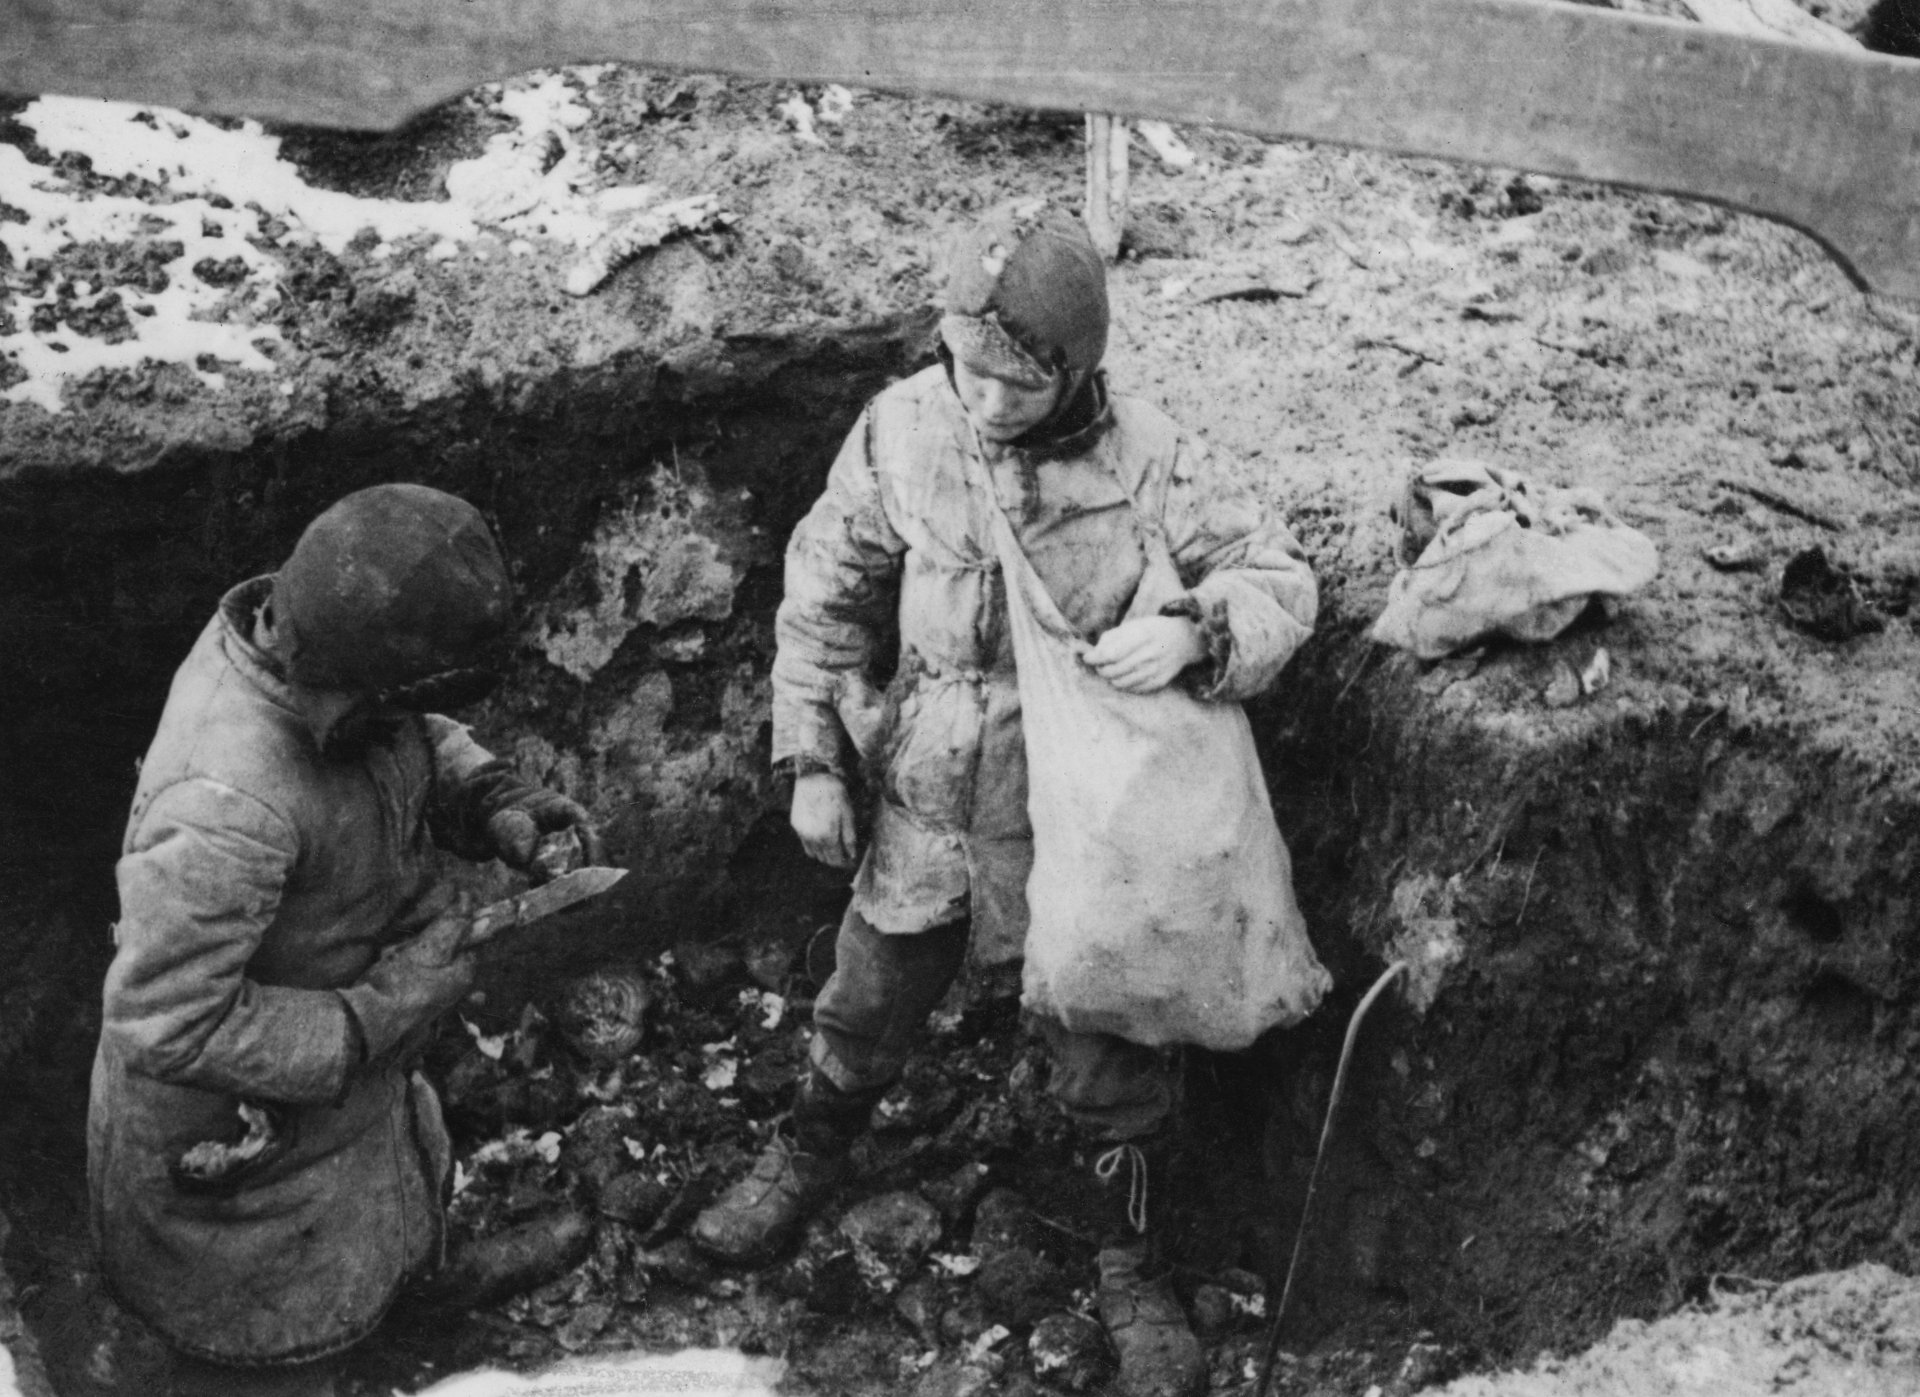 През 1932 г. и 1933 г. около 3,5 милиона украинци стават жертва на Гладомора (на украински "Голодомор", което означава "изтребление чрез глад"), причинен от режима на Сталин